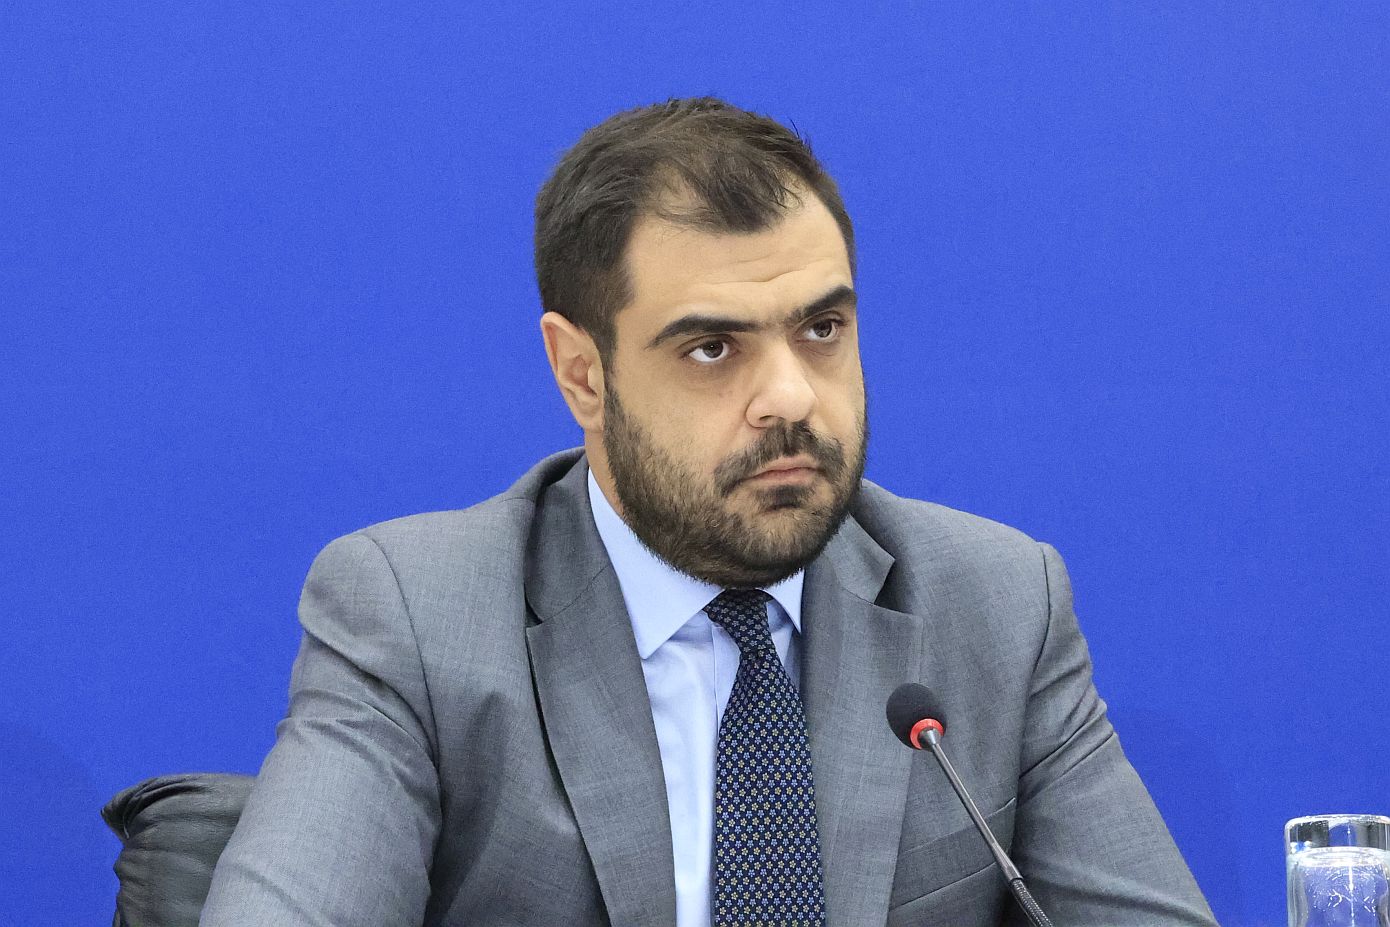 Παύλος Μαρινάκης: Δεν τίθεται κανένα θέμα αλλοίωσης της έρευνας για το δυστύχημα των Τεμπών